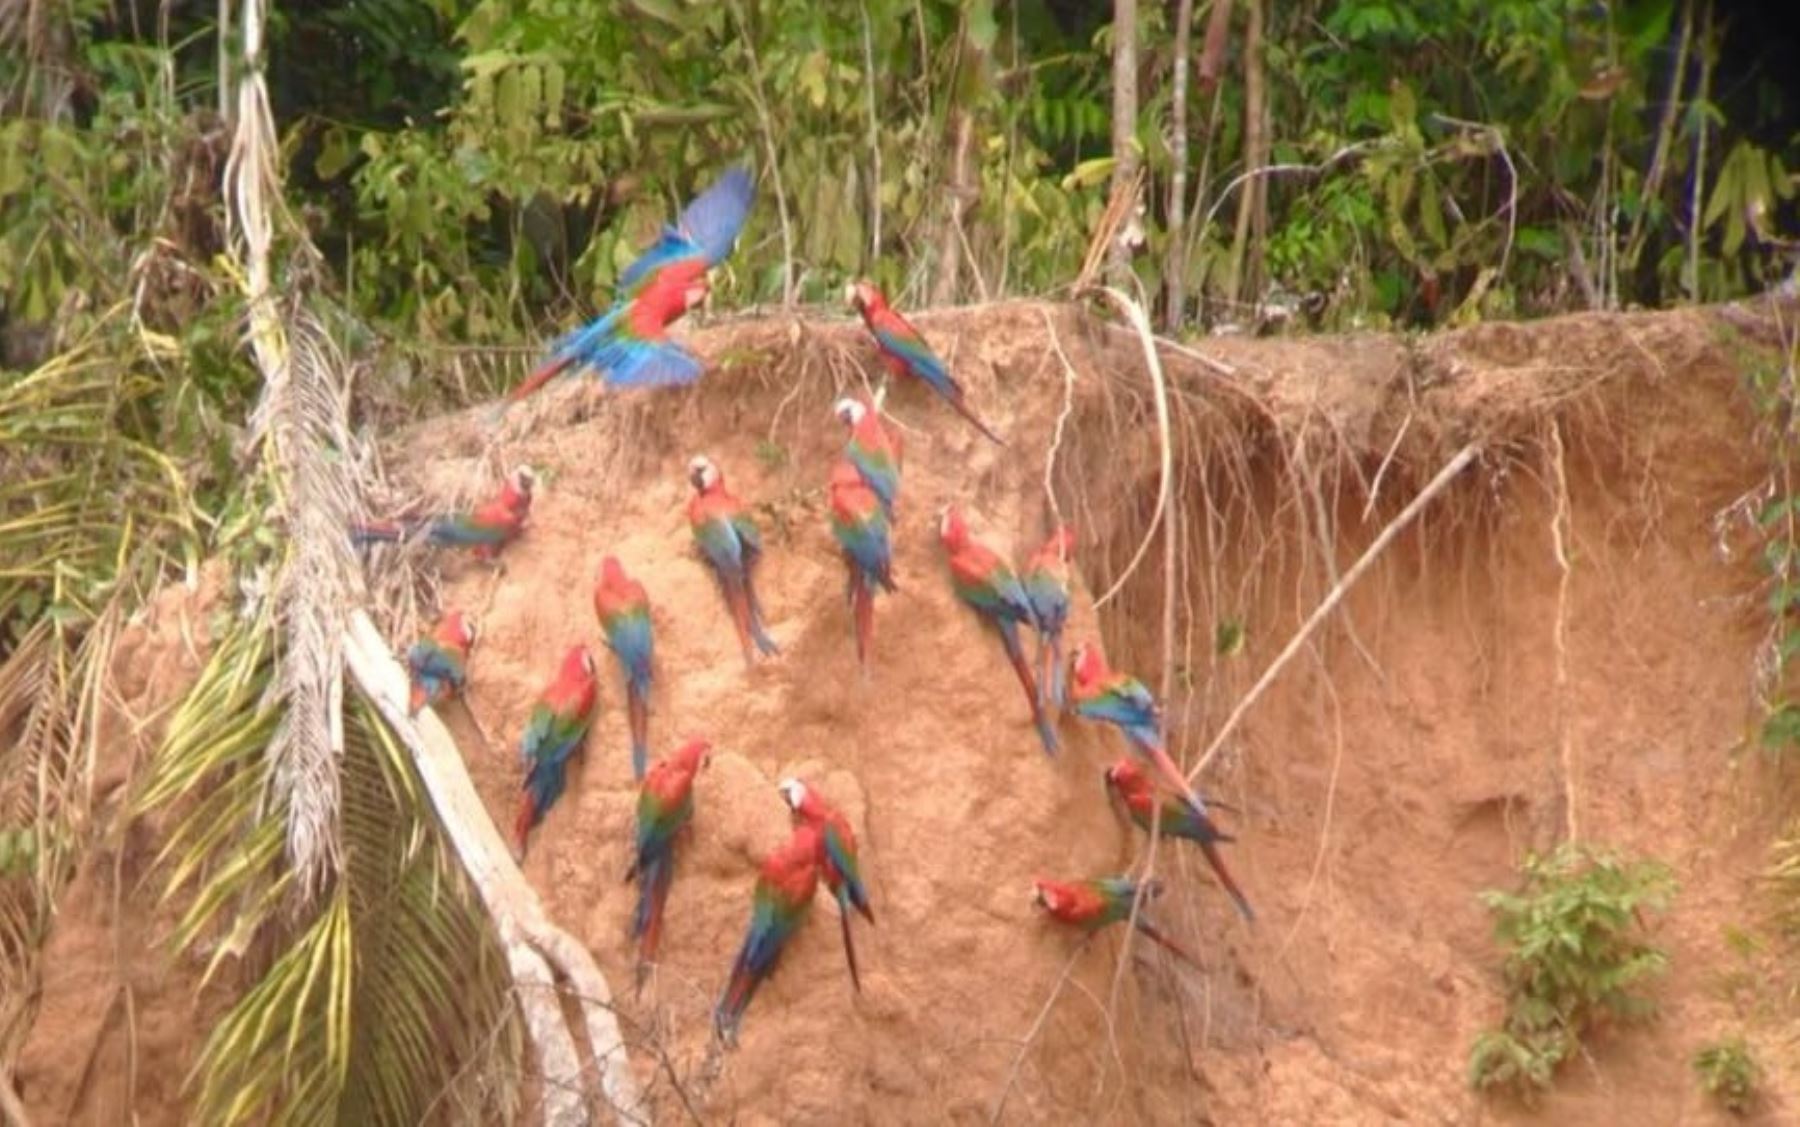 Los atractivos característicos de Tambopata son las colpas que se hallan en la orilla de los ríos reuniendo a cientos de aves (guacamayos, halcones y loros) ofreciendo un espectáculo de color y sonido espectacular. Foto: Facebook/Jaime Quispe Nina.